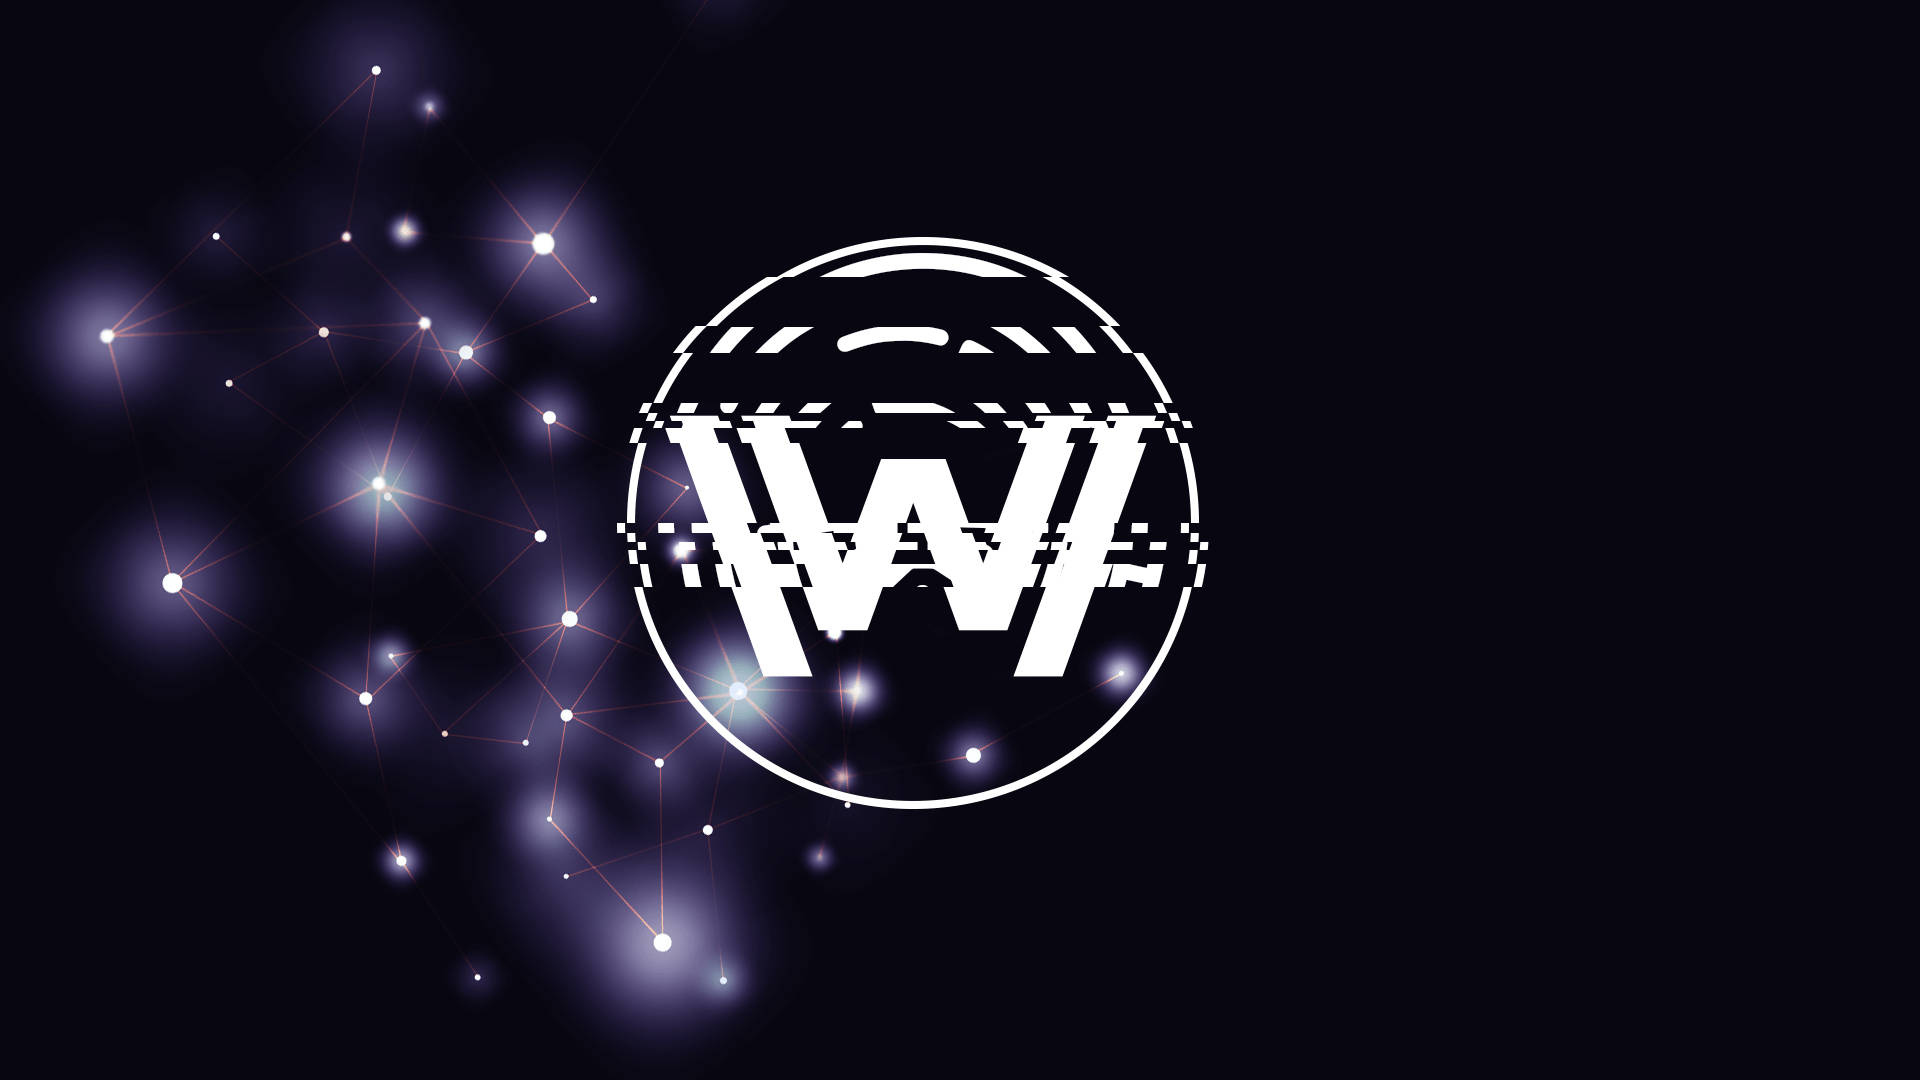 Logotipode Westworld Com A Constelação De Estrelas. Papel de Parede